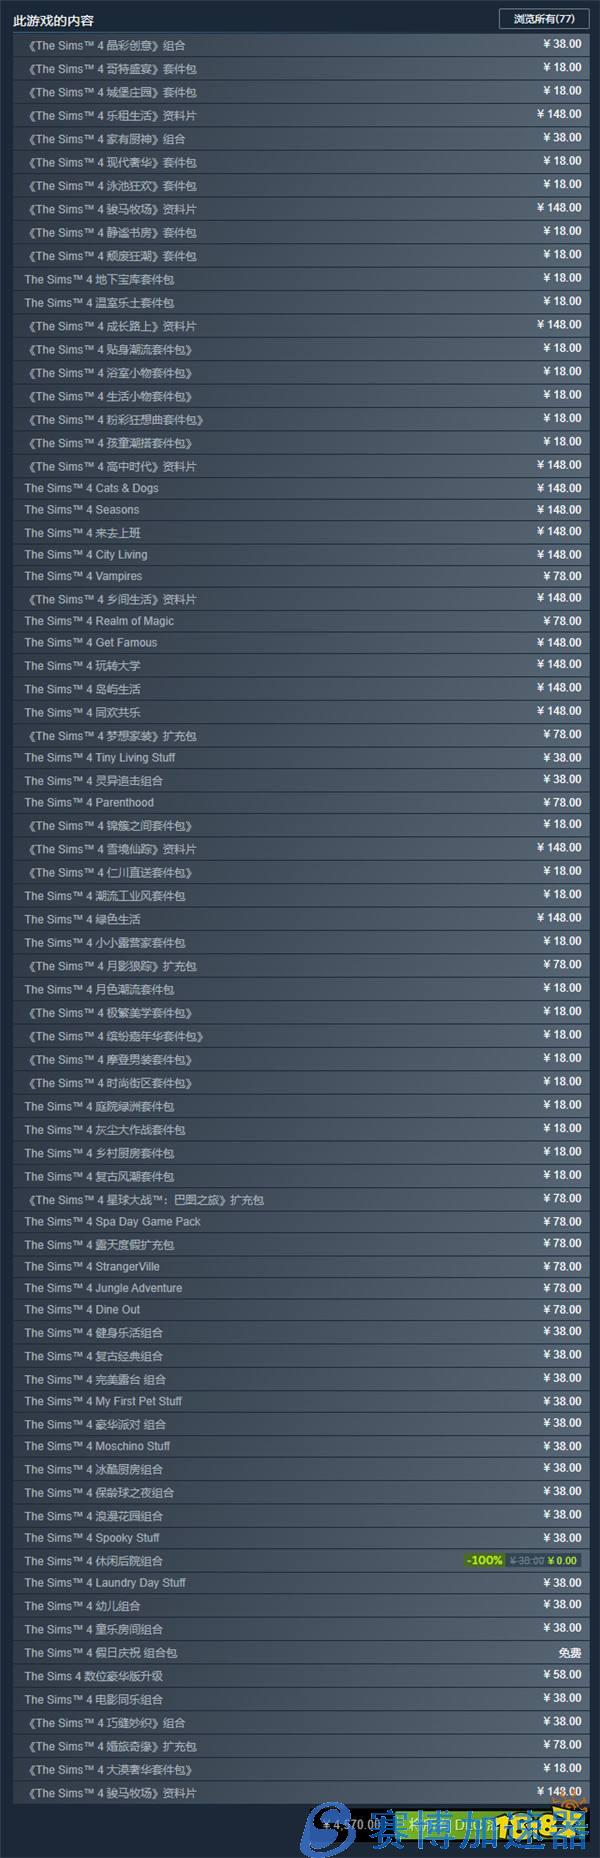 《模拟人生4》Steam各DLC国区售价永降 本体免费游玩